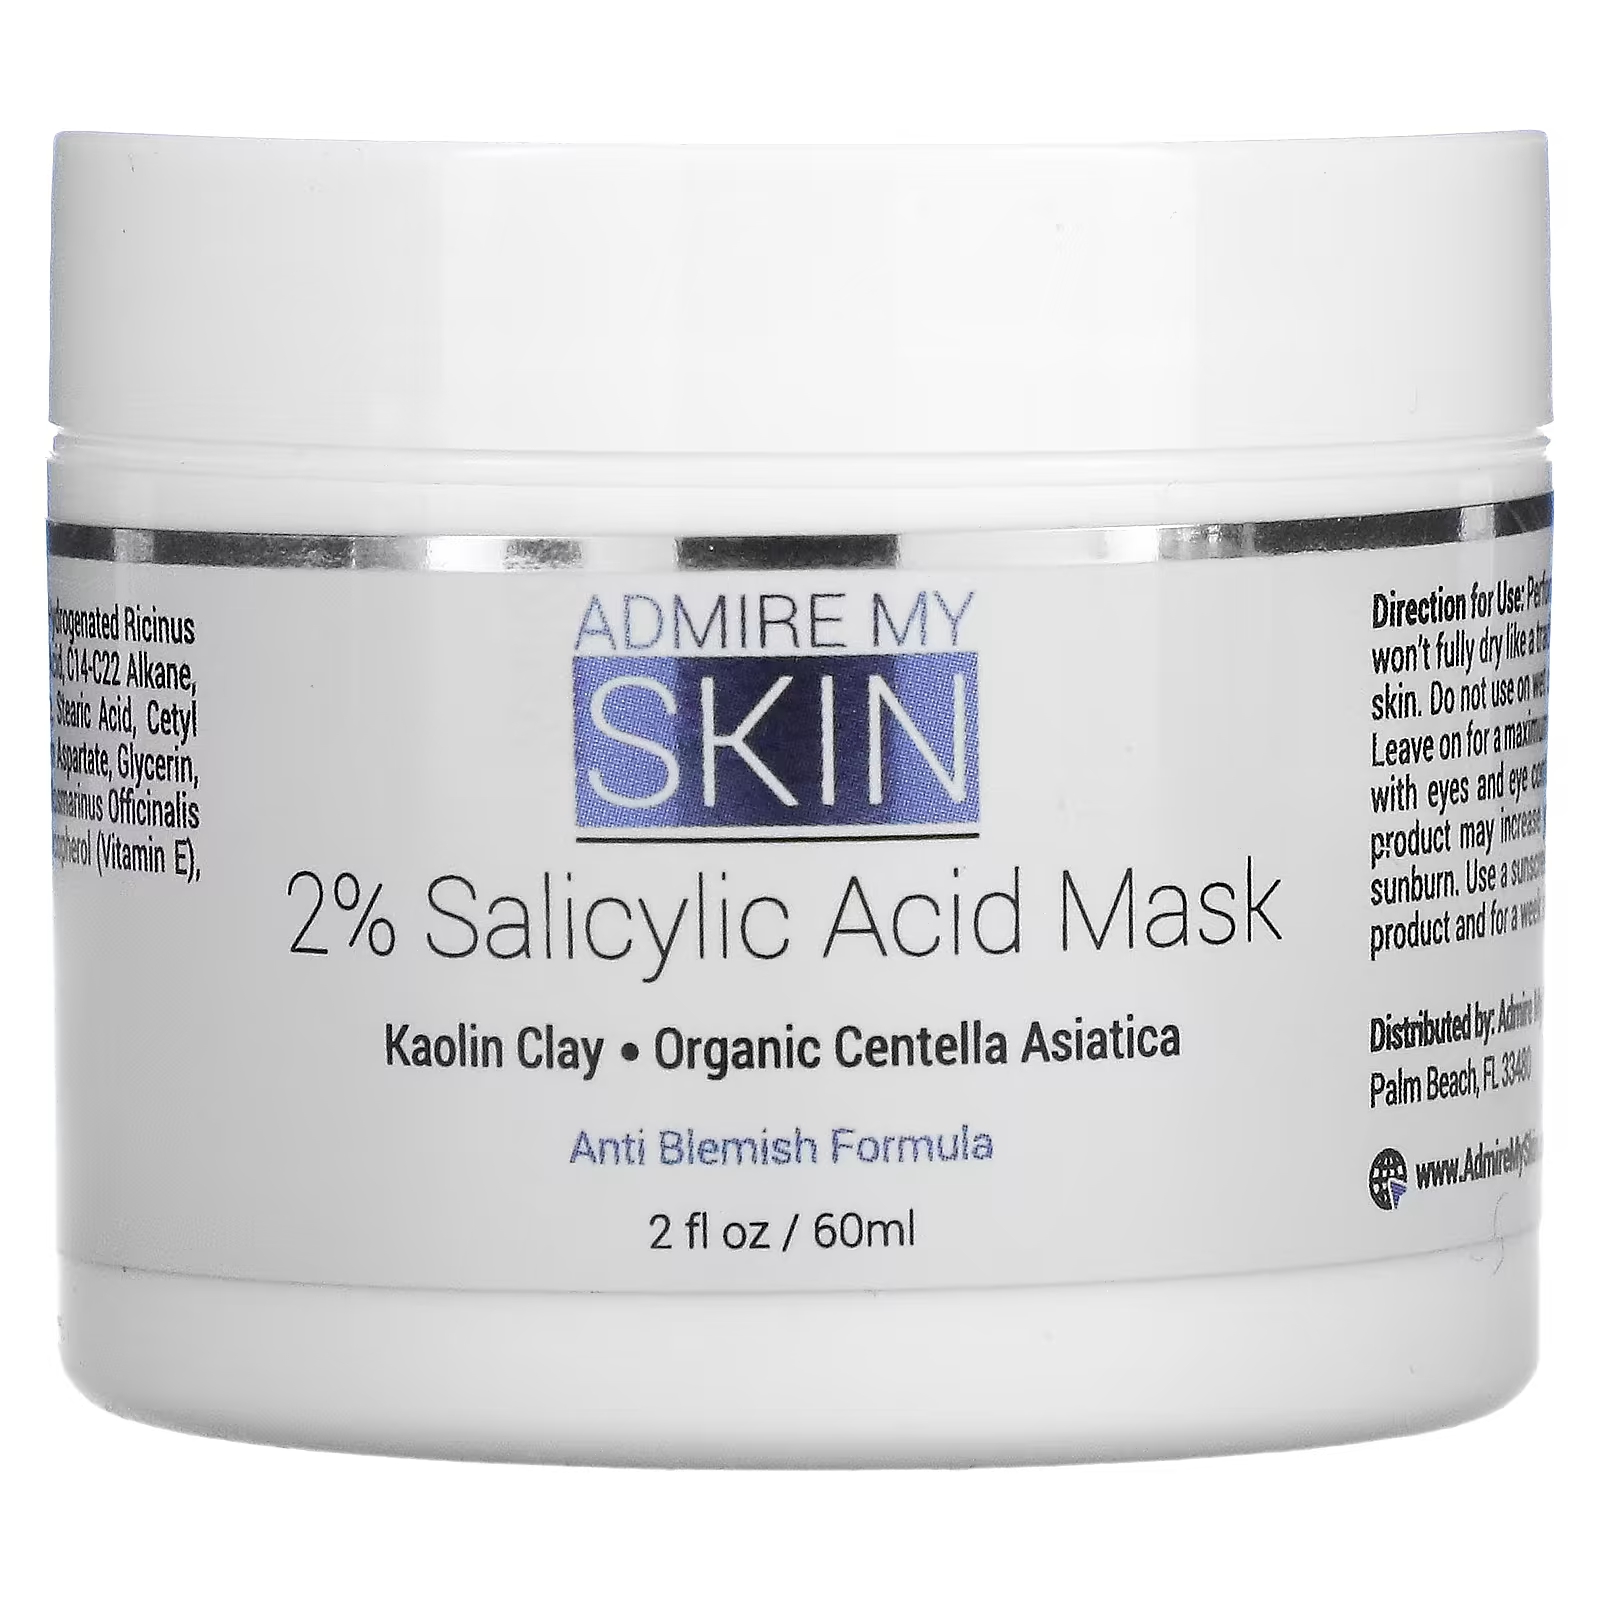 Косметическая маска Admire My Skin с 2% салициловой кислотой, 2 жидких унции (60 мл) косметическая маска admire my skin с 2% салициловой кислотой 2 жидких унции 60 мл